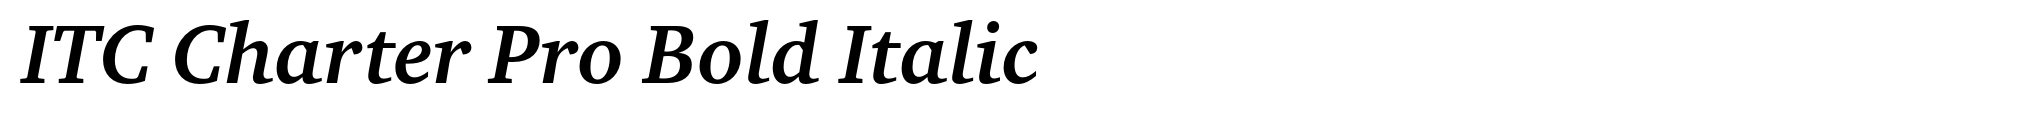 ITC Charter Pro Bold Italic image